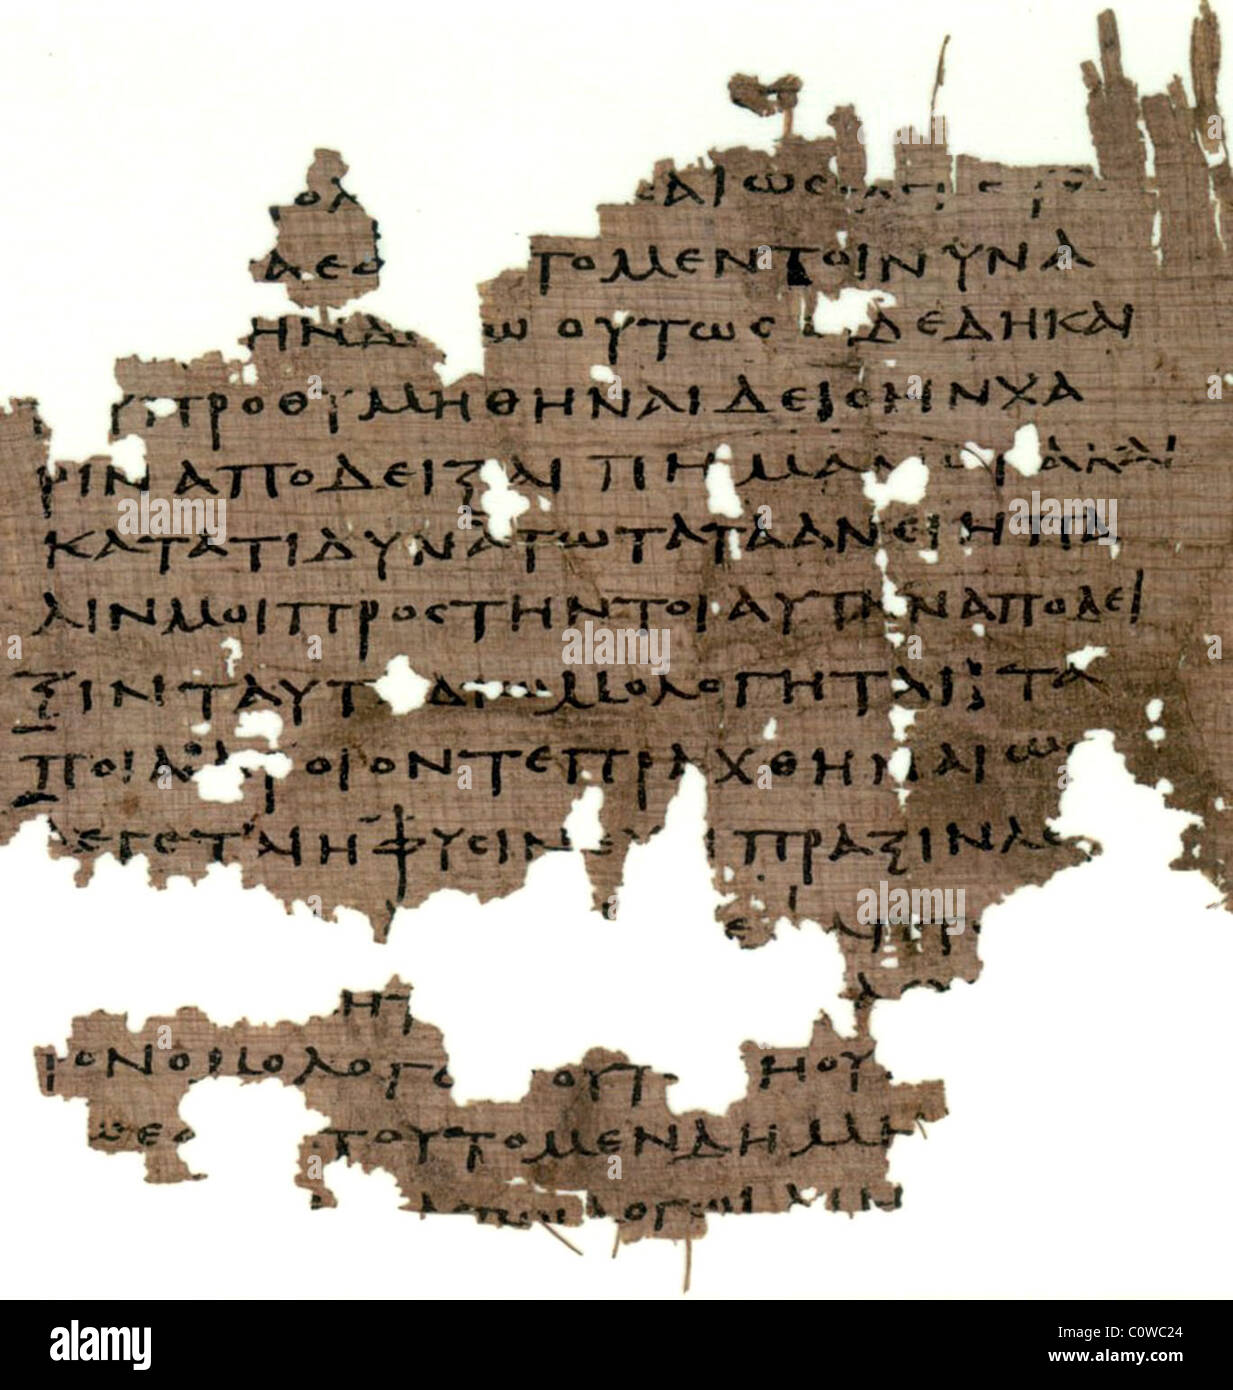 Plato's Republic,  fragment of Plato's Republic Stock Photo